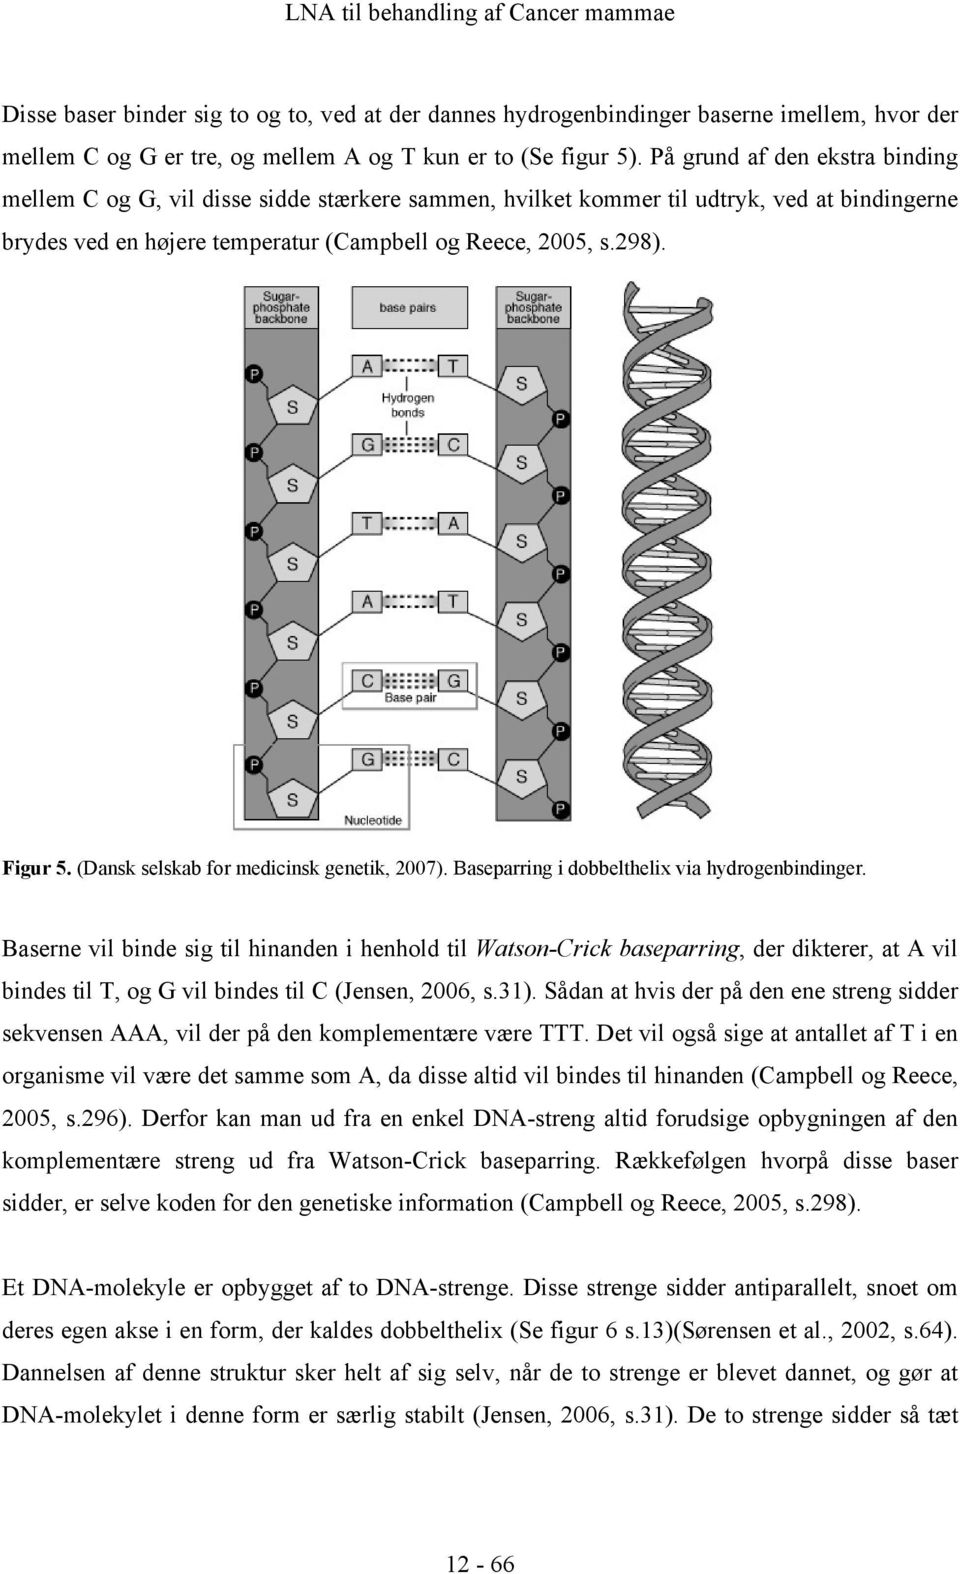 (Dansk selskab for medicinsk genetik, 2007). Baseparring i dobbelthelix via hydrogenbindinger.